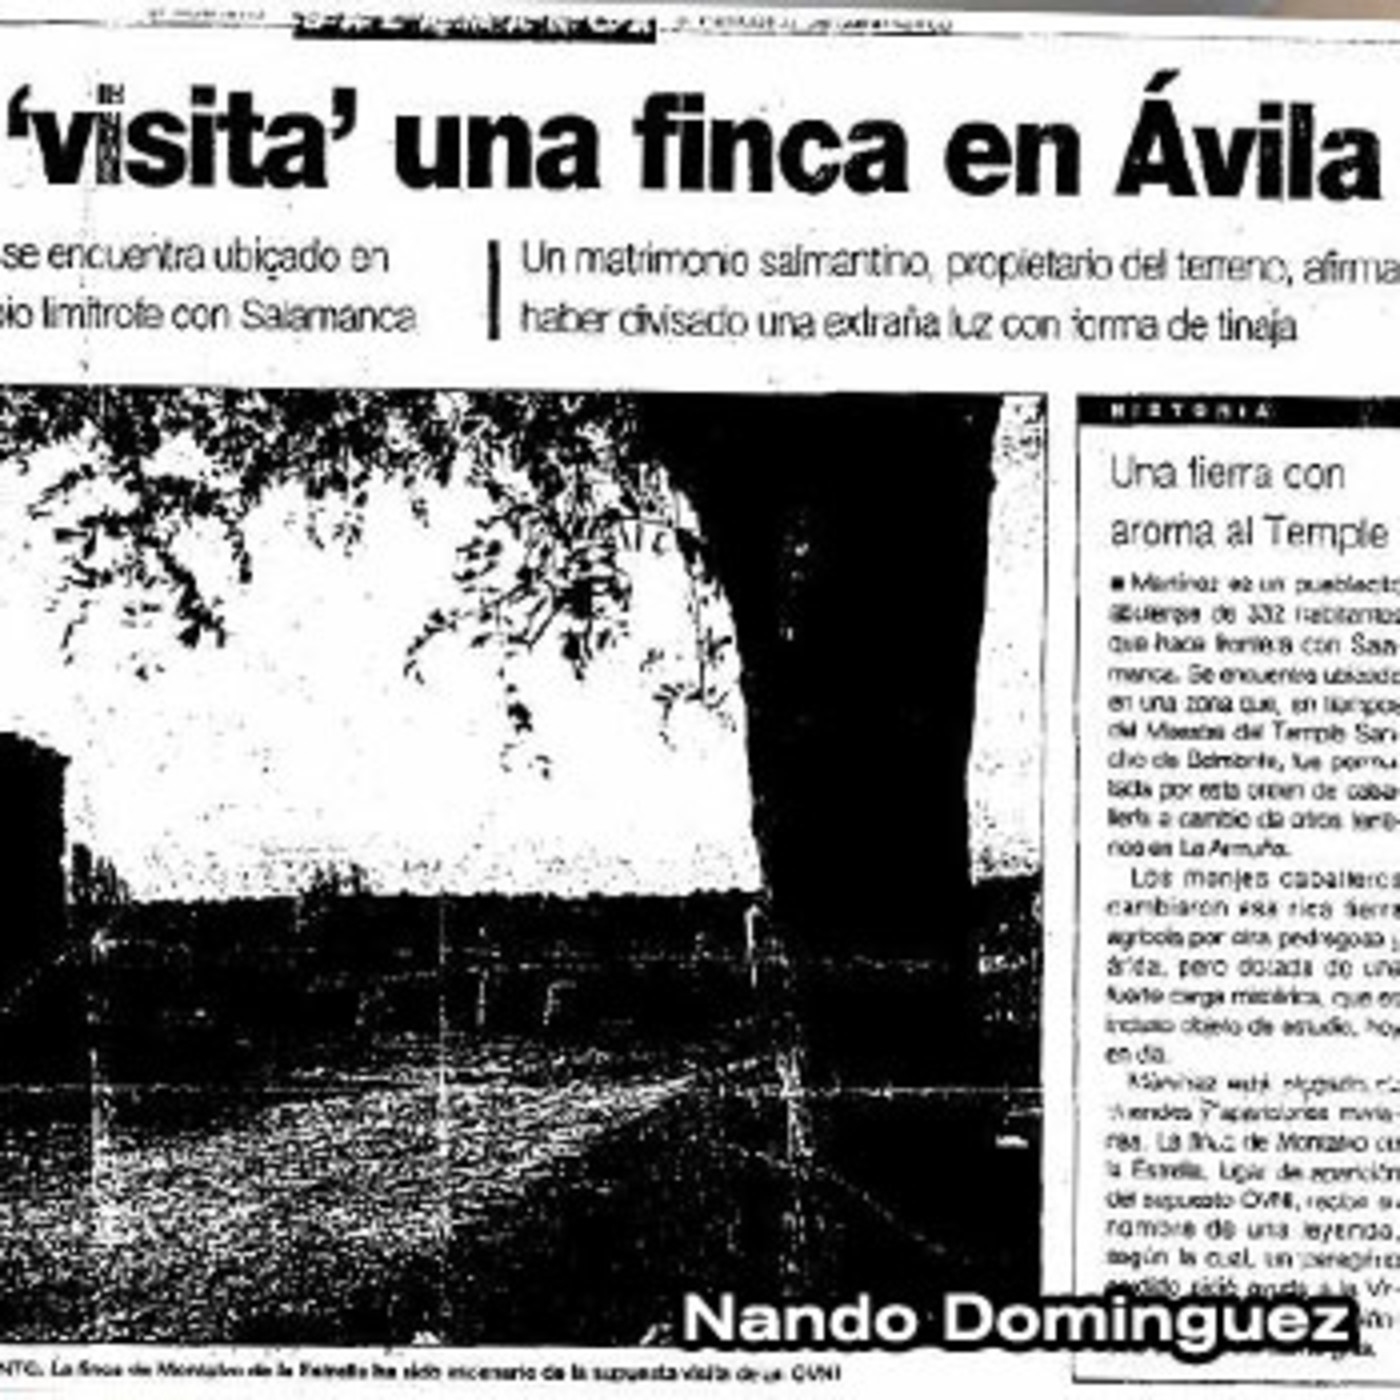 La Puerta Al Universo - Un Ovni visita una finca en Avila 1997 “CASO MONTALVO”